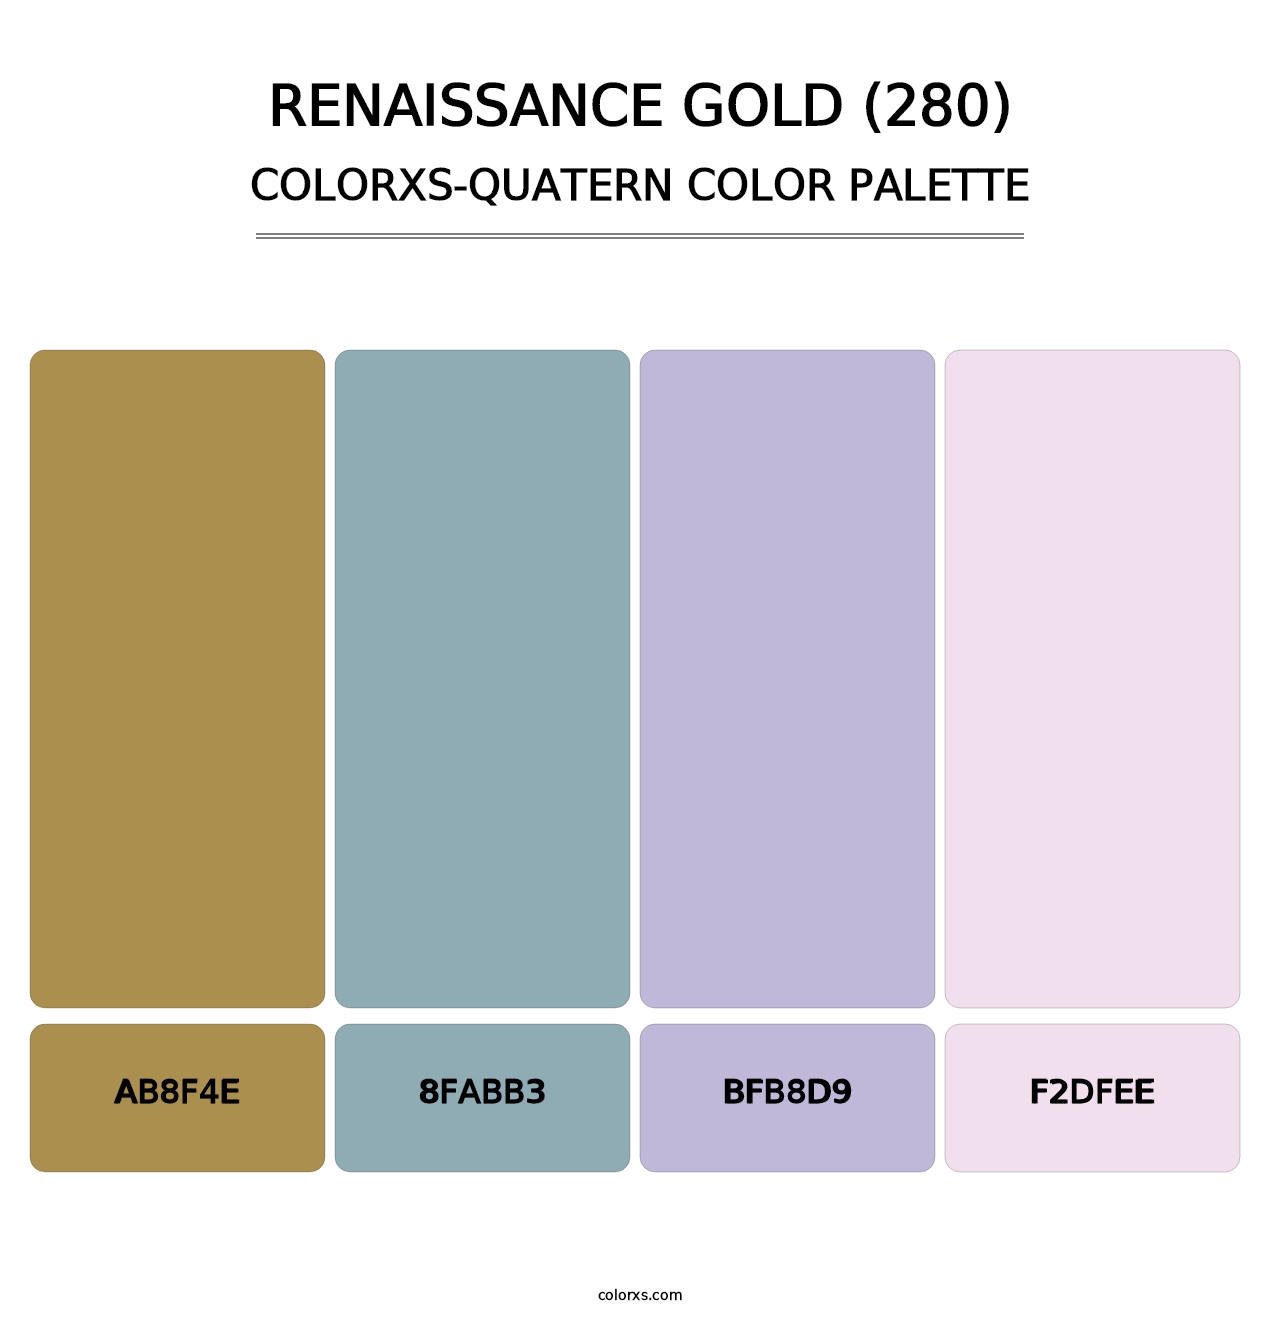 Renaissance Gold (280) - Colorxs Quatern Palette